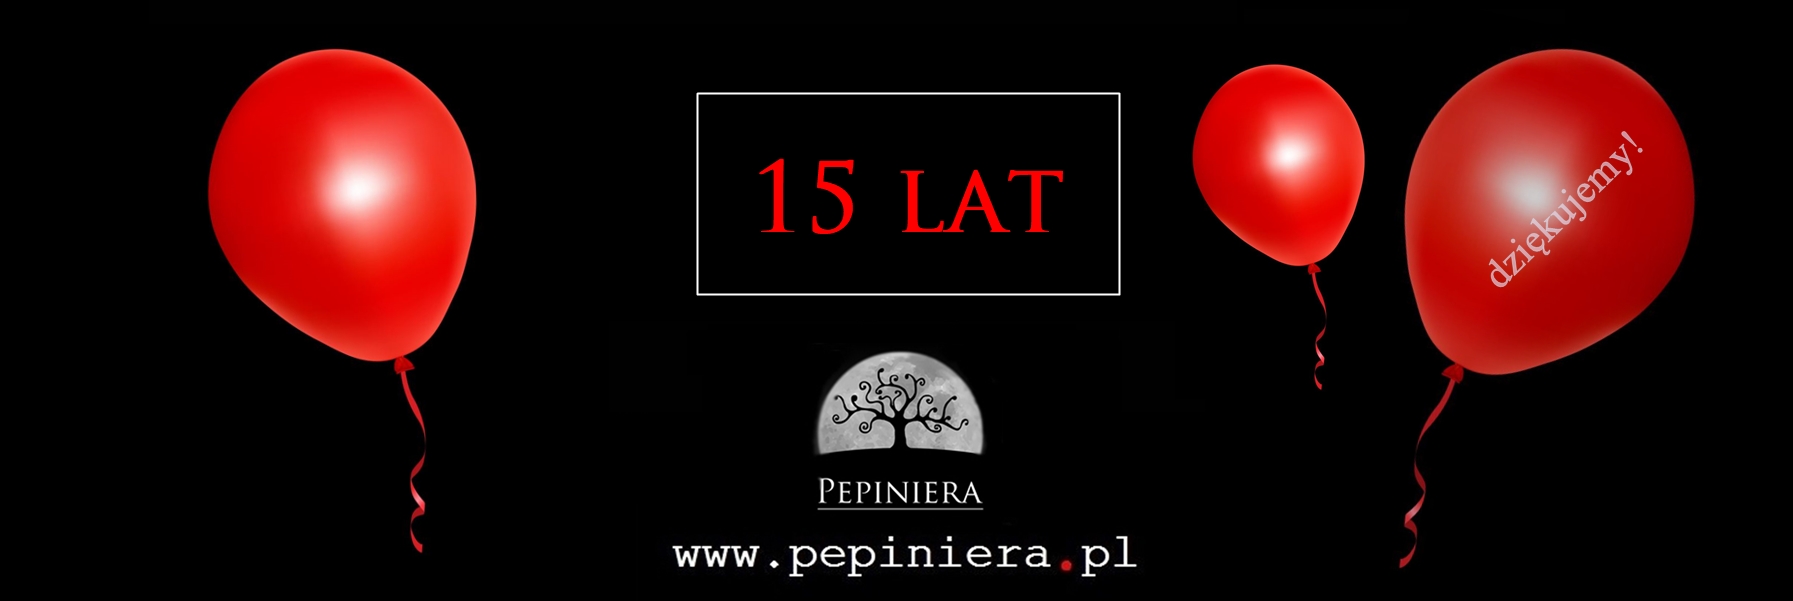 https://www.pepiniera.pl/polecane.html